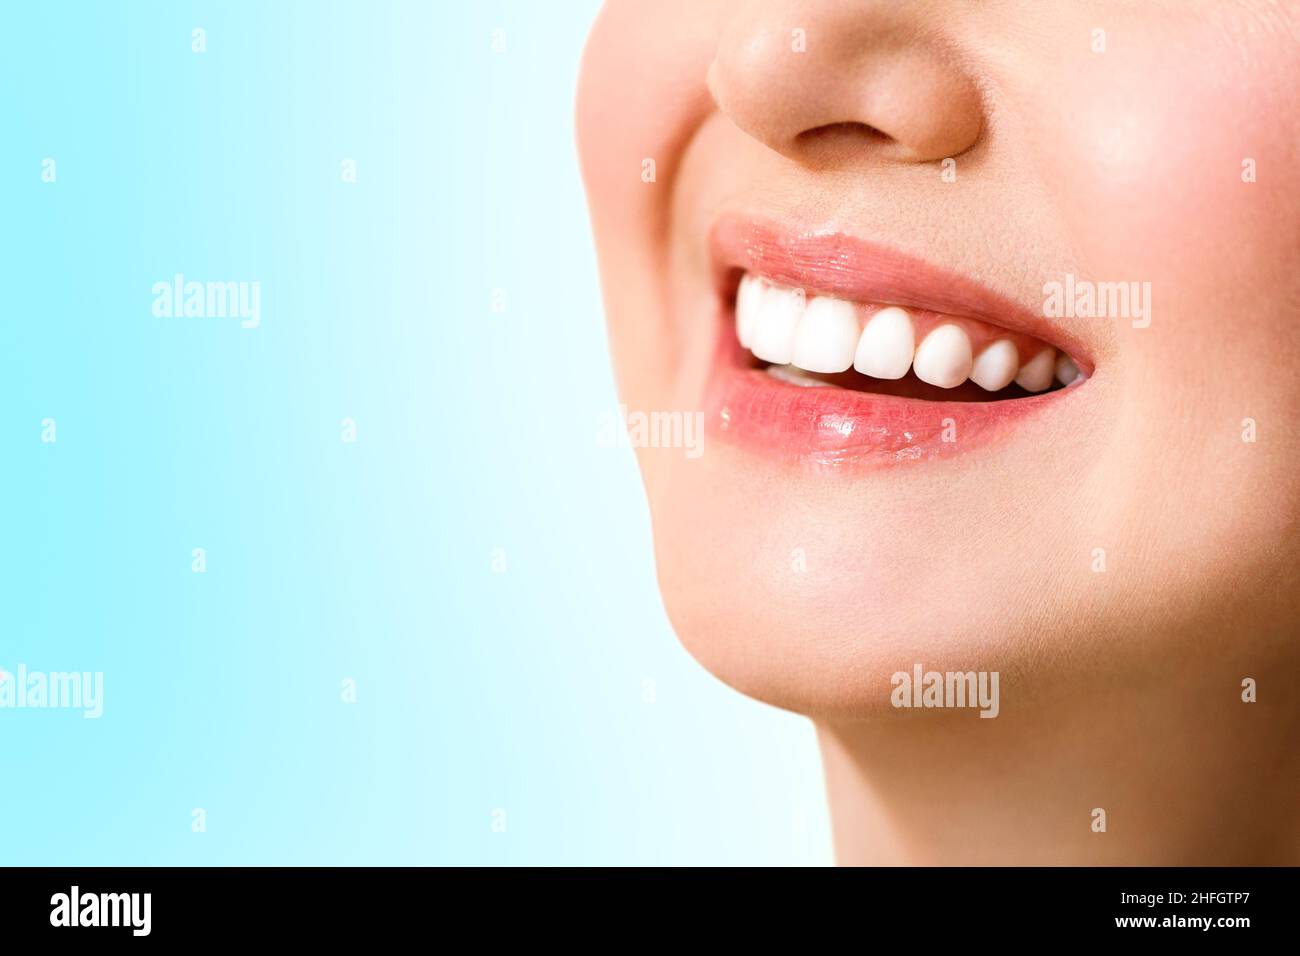 Schönes weibliches Lächeln nach Zahnaufhellung Verfahren. Zahnpflege. Zahnmedizin Konzept. Auf blauem Hintergrund. Stockfoto